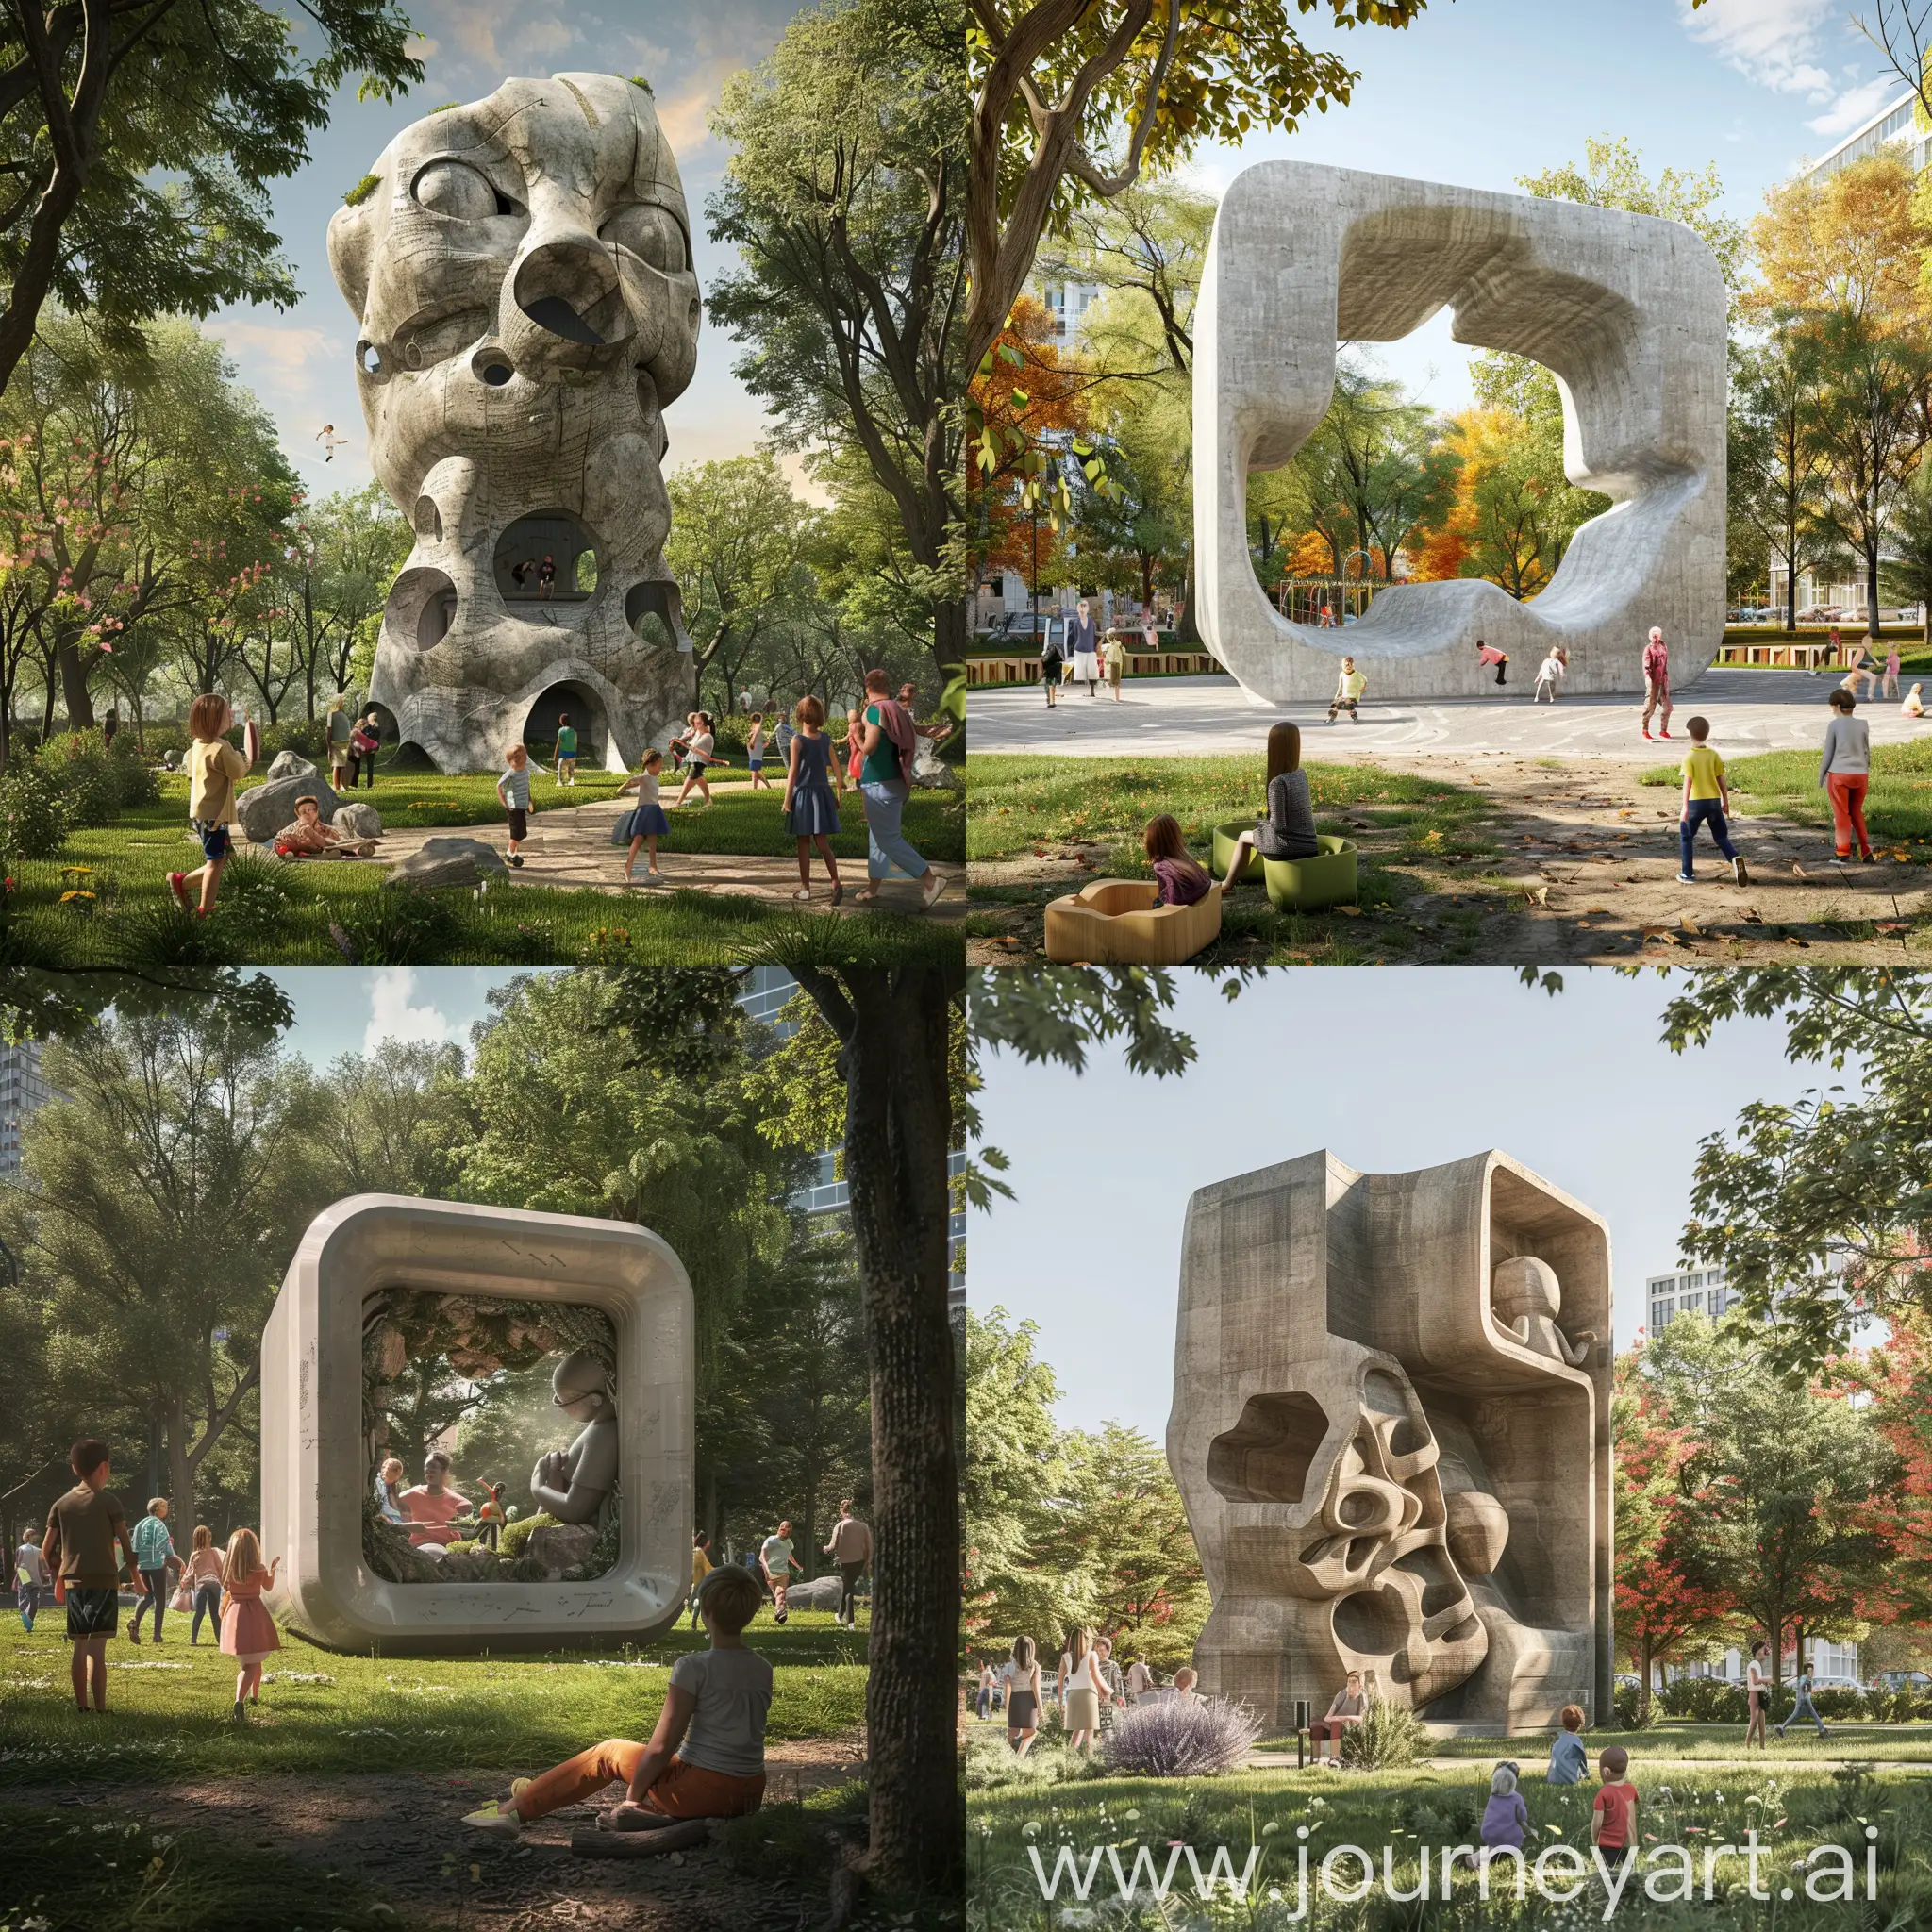 imagen hiperrealista de una escultura urbana  sobre la educación puesta sobre un parque, con niños jugando y padres alrededor